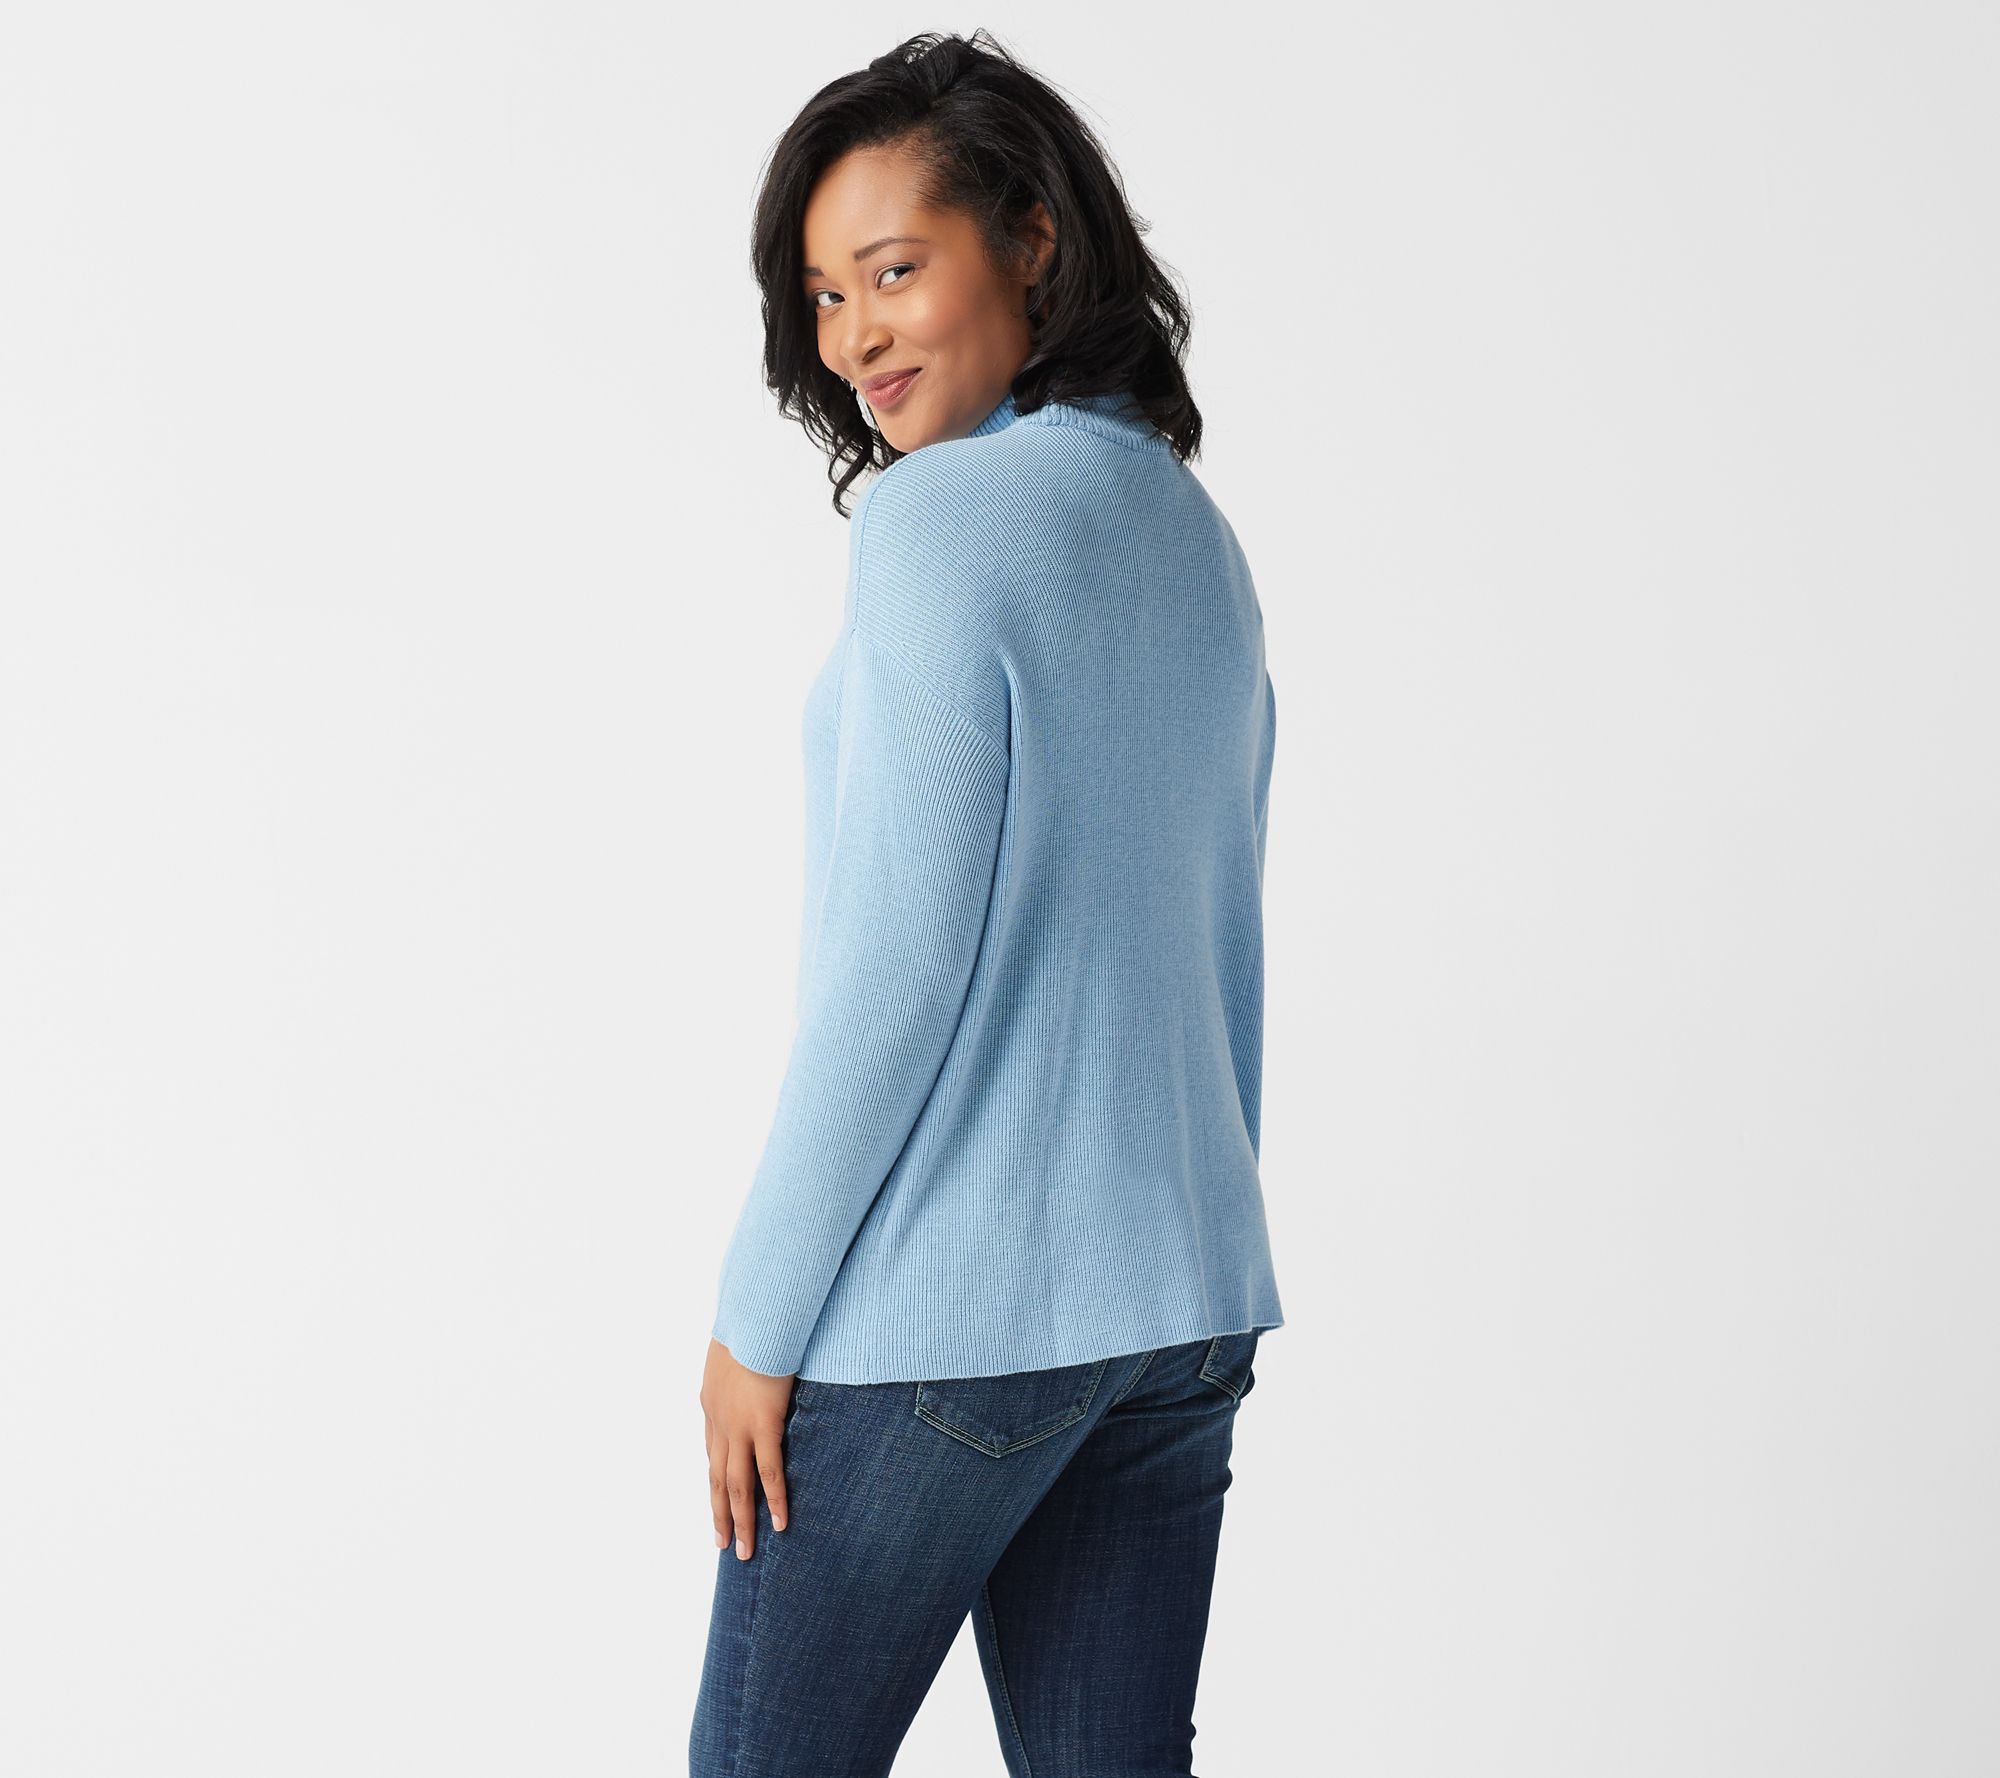 Laurie Felt Cashmere Blend Mock-Neck Long-Sleeve Sweater - QVC.com